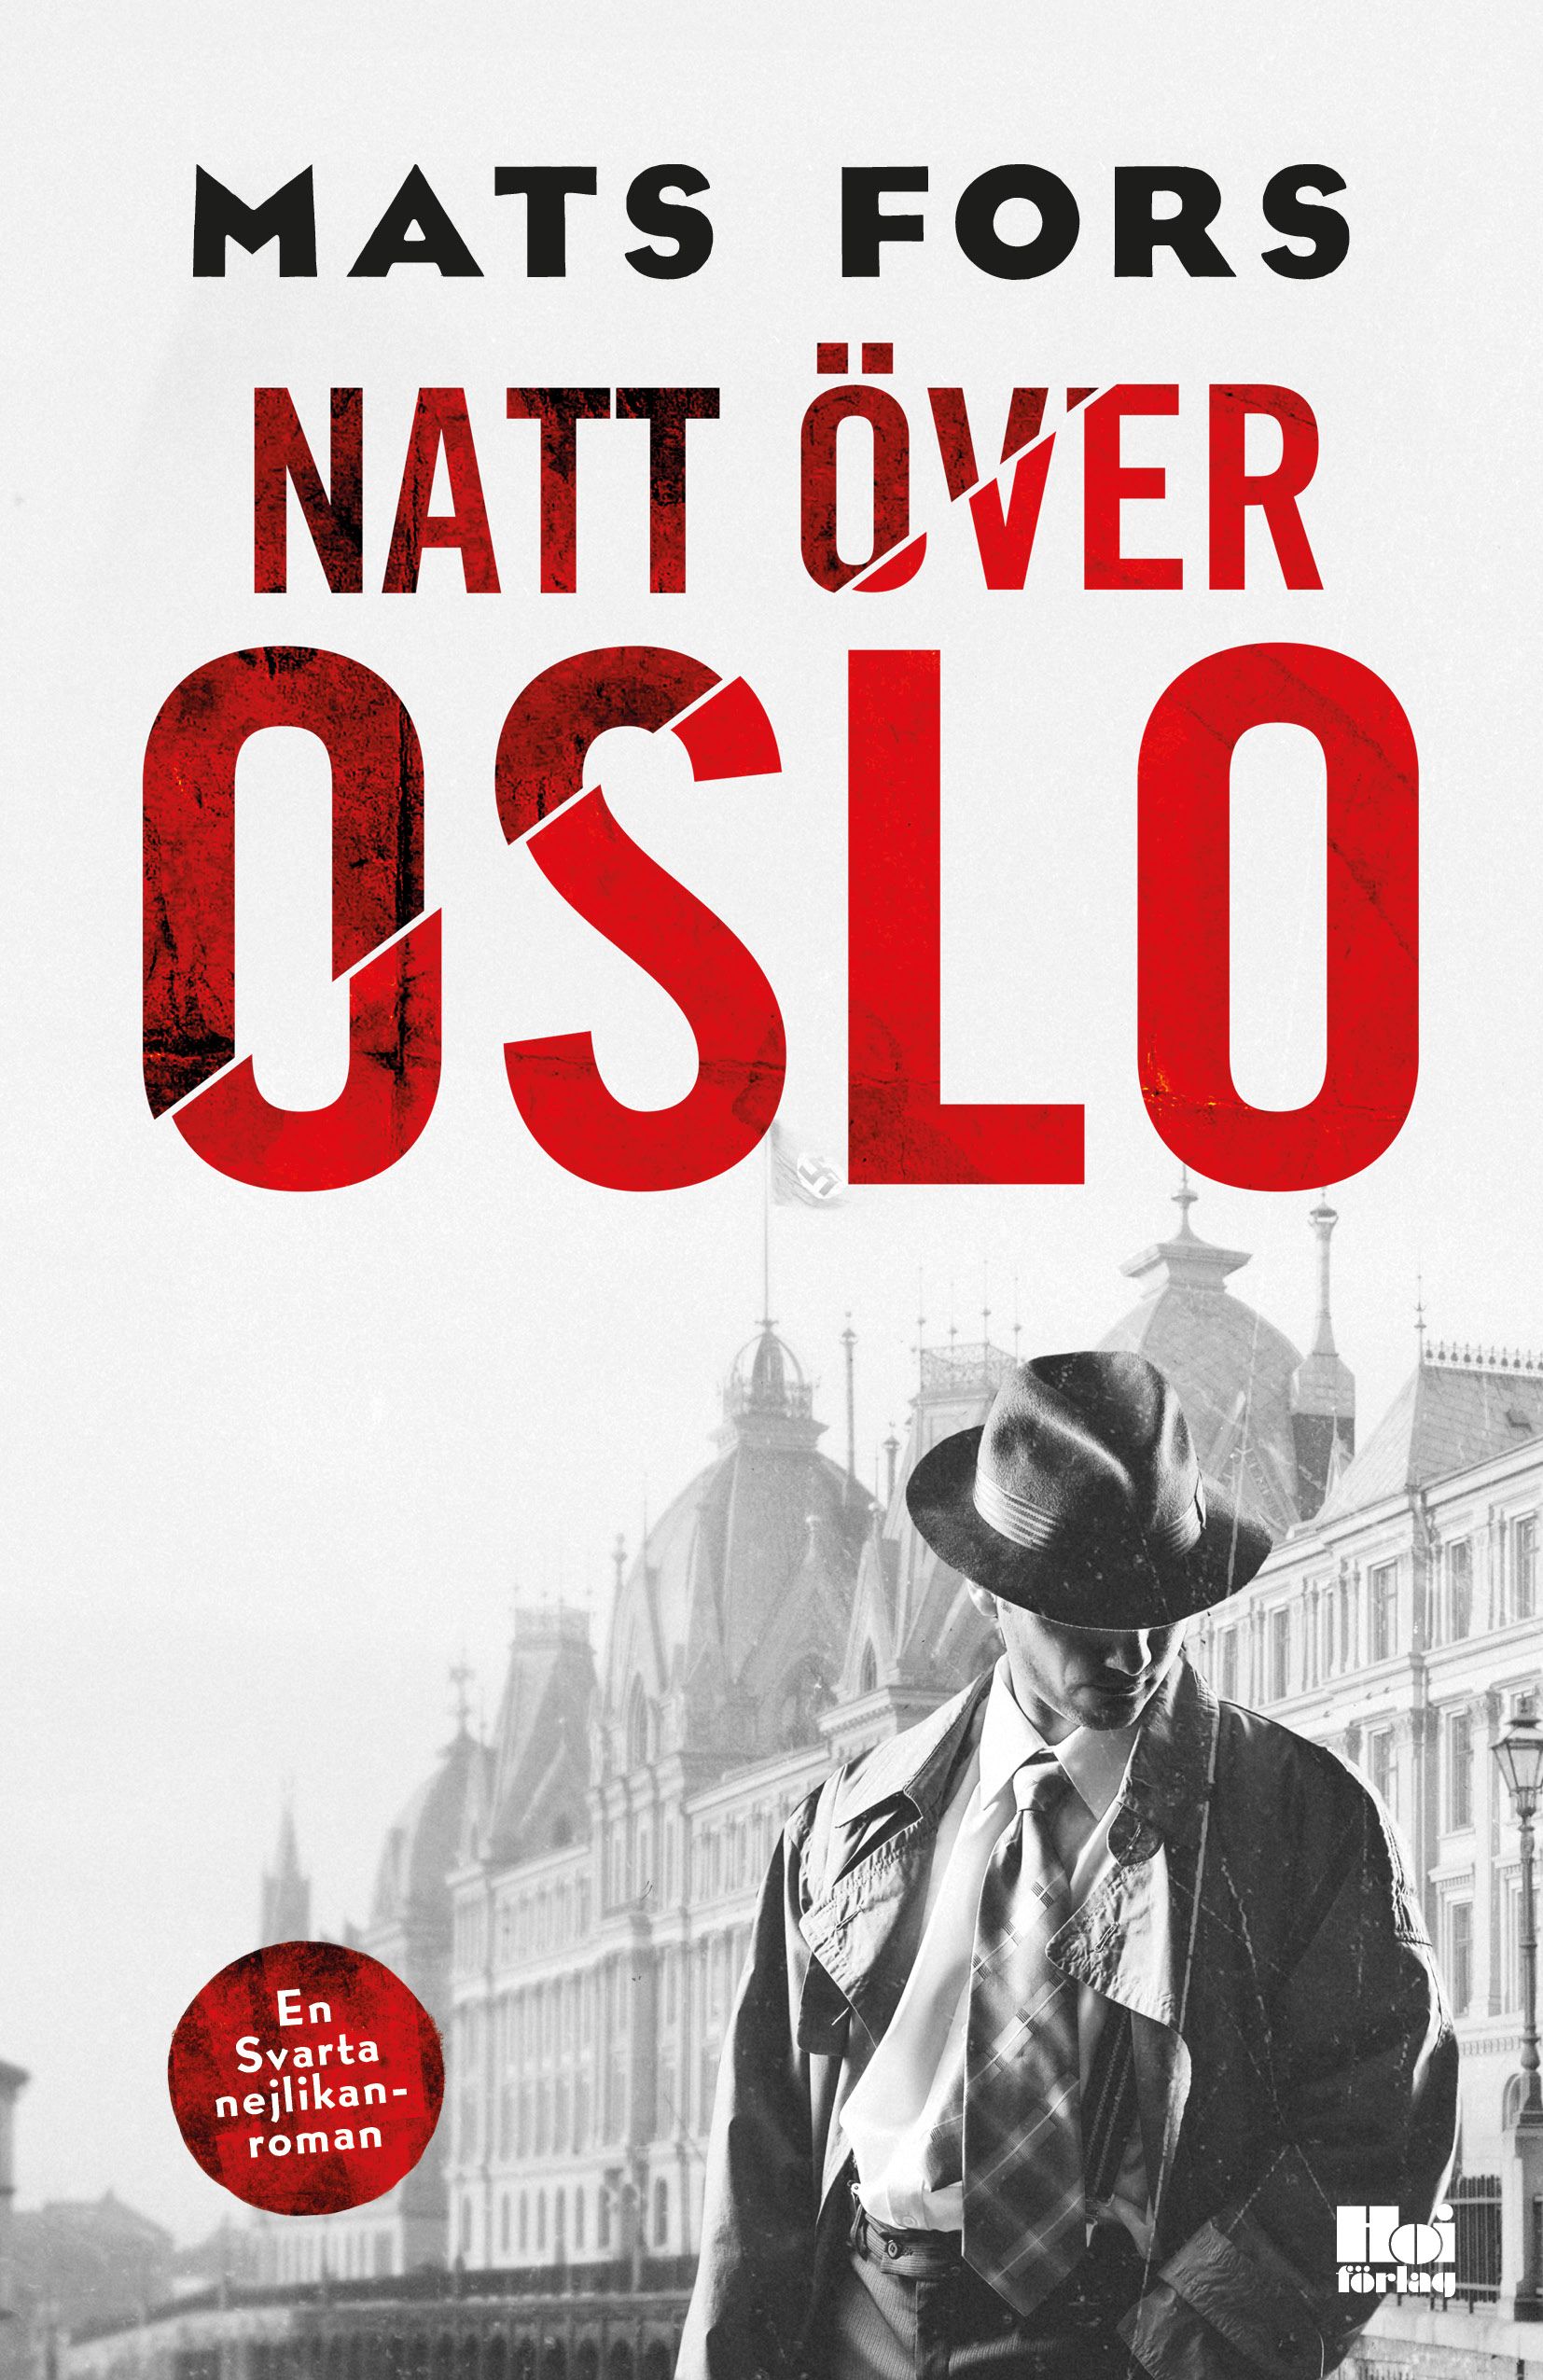 Natt över Oslo, e-bok av Mats Fors